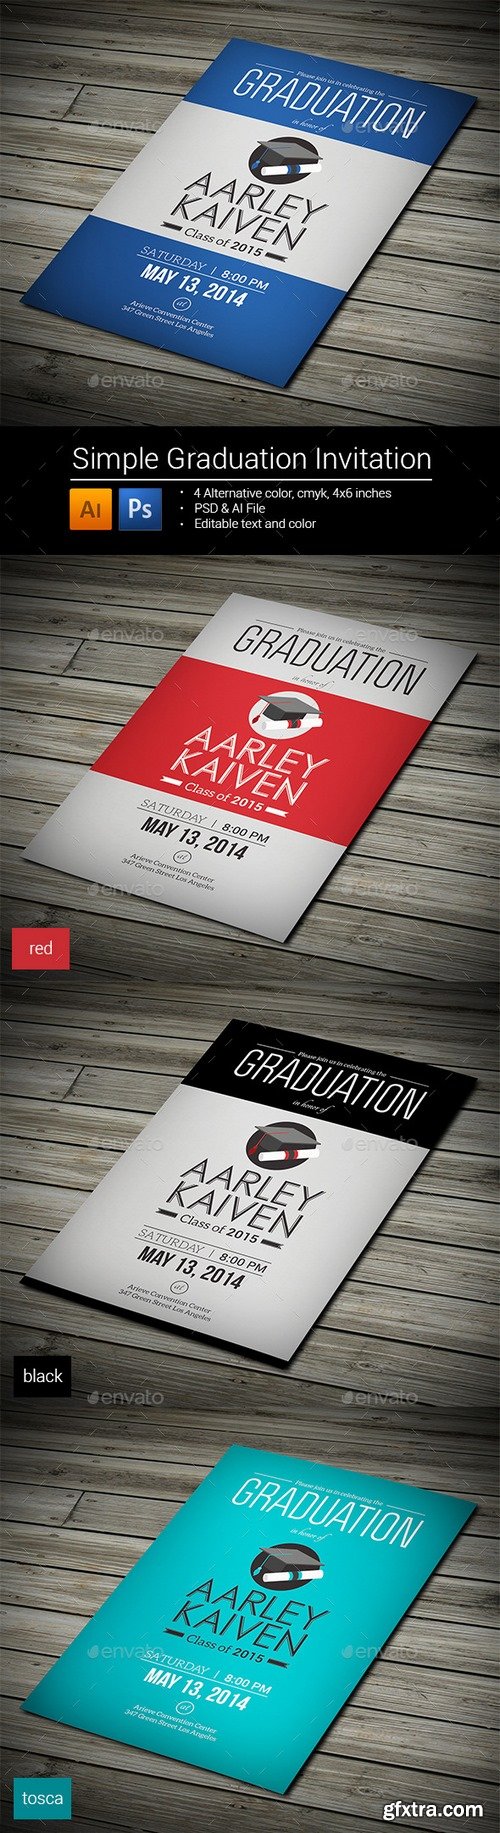 Graphicriver - Simple Graduation Invitation 8993243